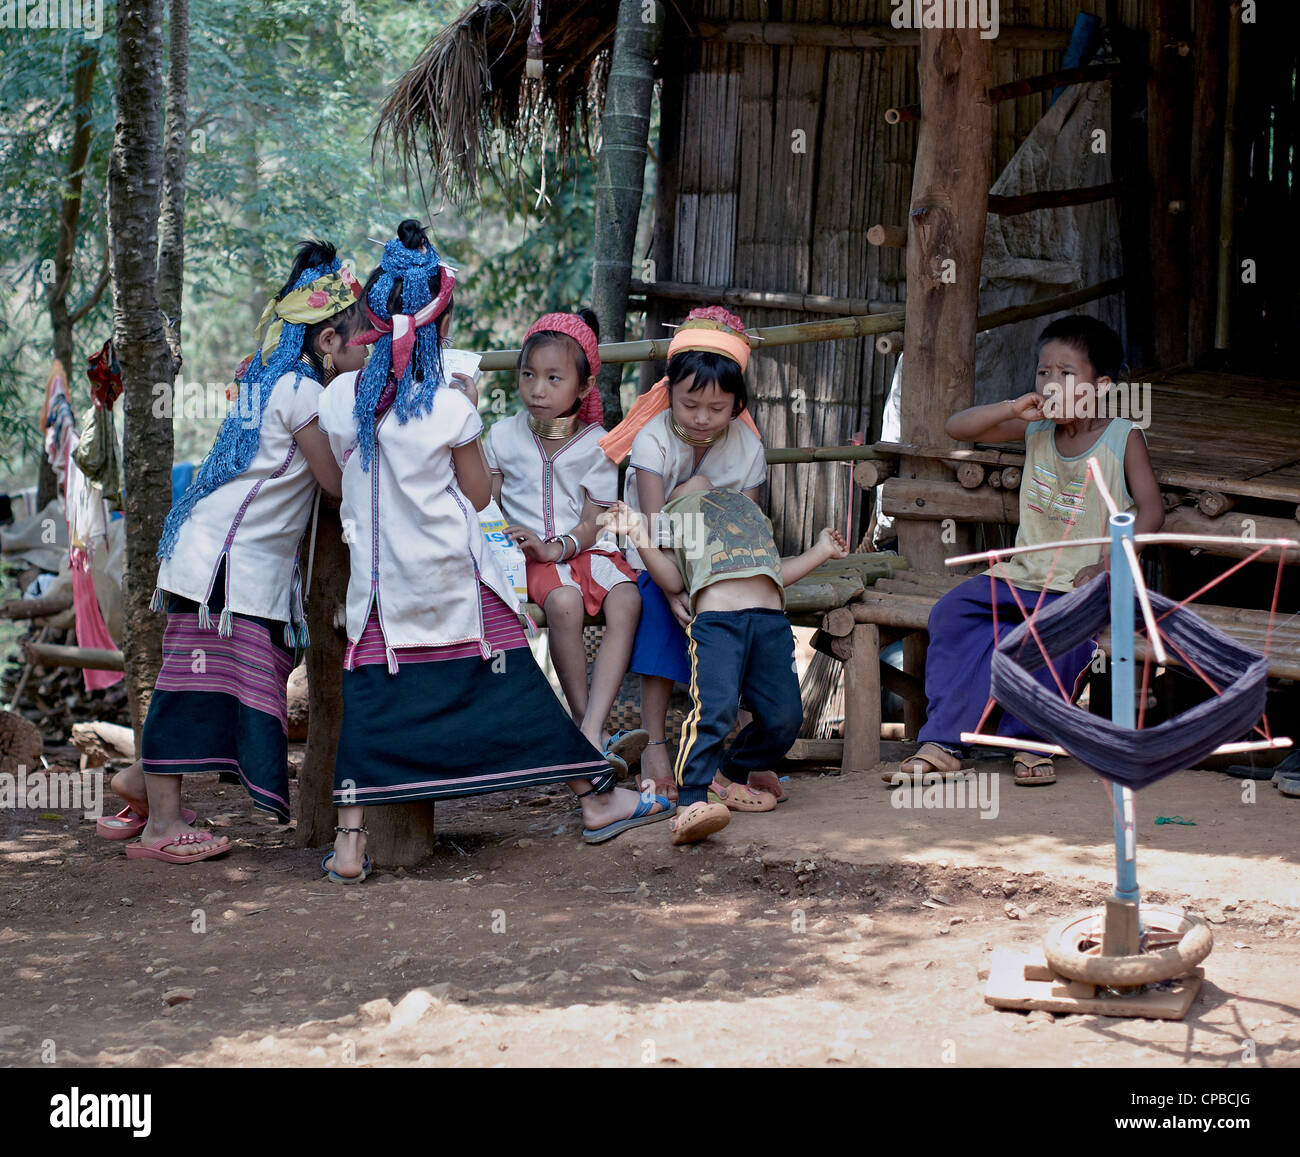 Lange Hals (Kayan) Hill Tribe Kinder im Norden von Thailand. Ländliche Thailand Menschen S.E. Asien. Bergstämme Stockfoto